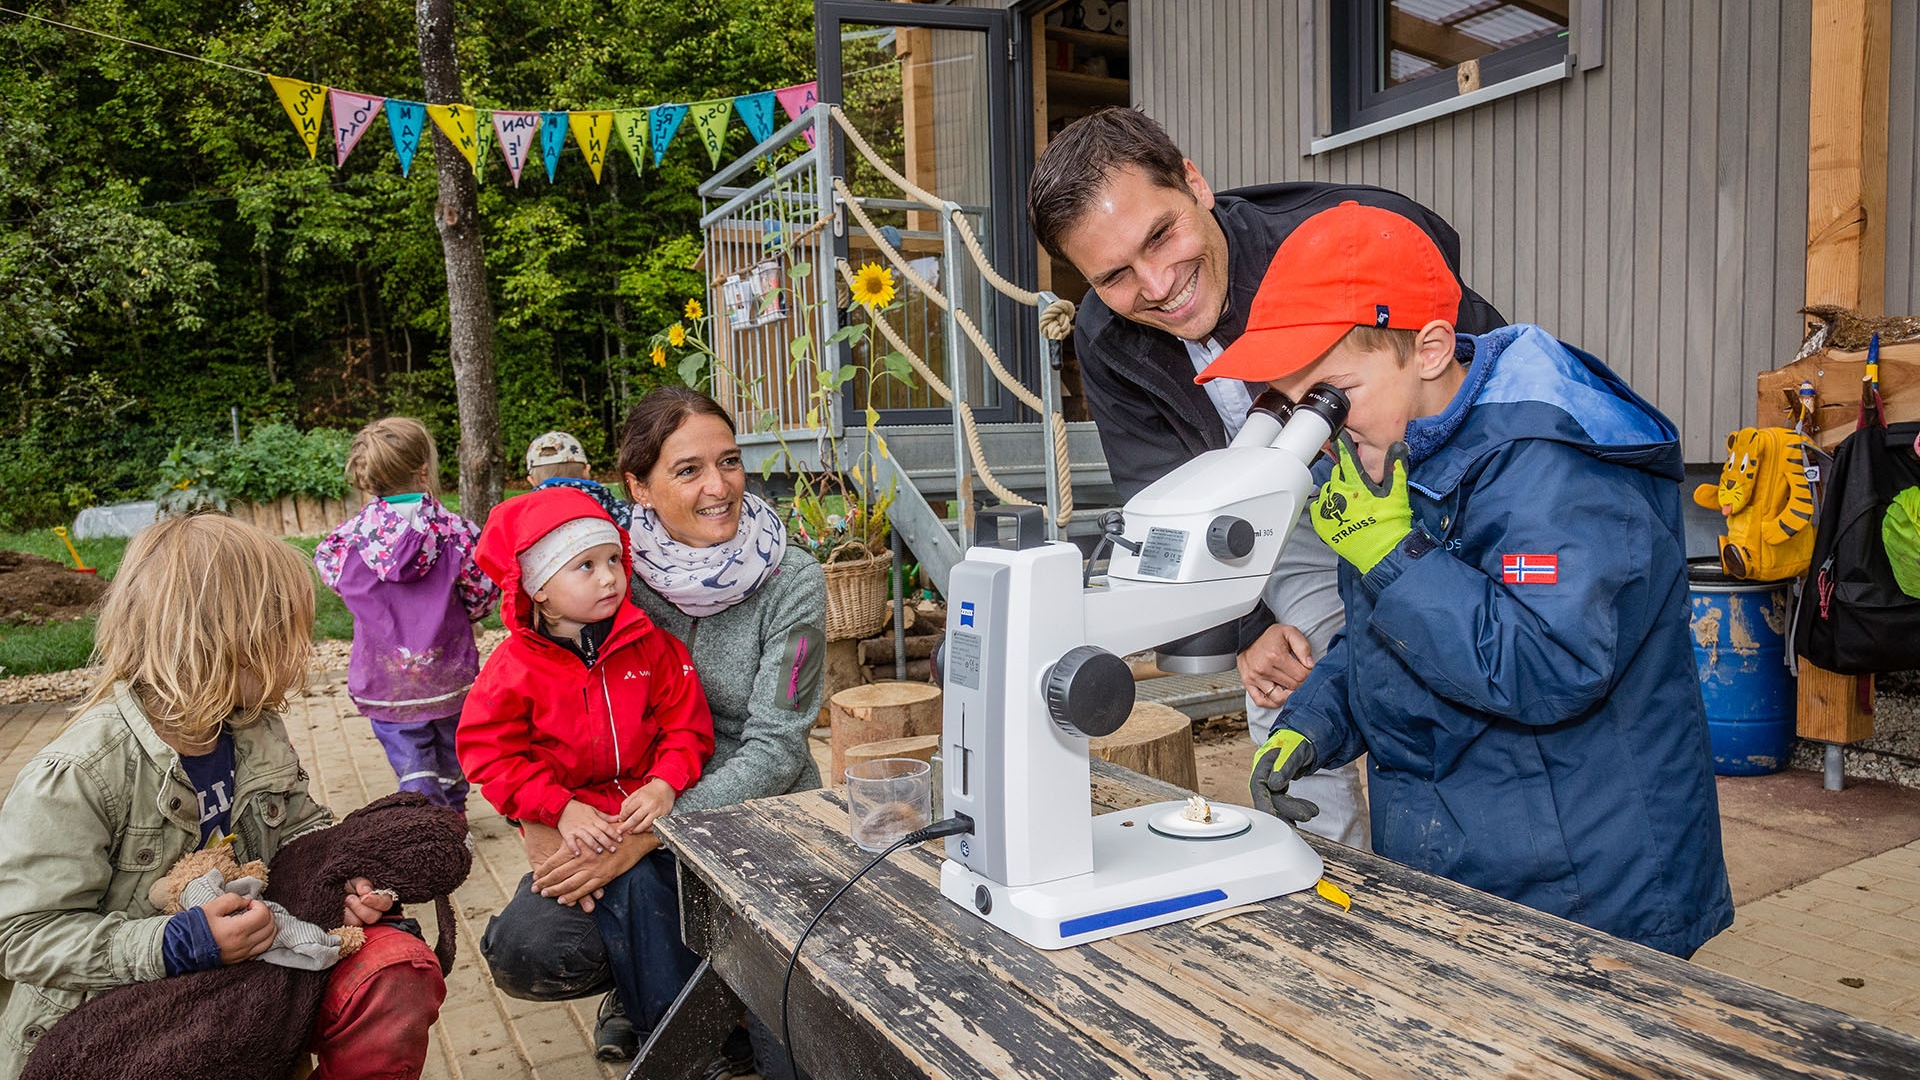 ZEISS Mikroskopspezialist Dr. Frank Vogler richtete das ZEISS Stemi 305 ein und zeigte den Kindern und Erzieherinnen, wie das Stereomikroskop funktioniert.